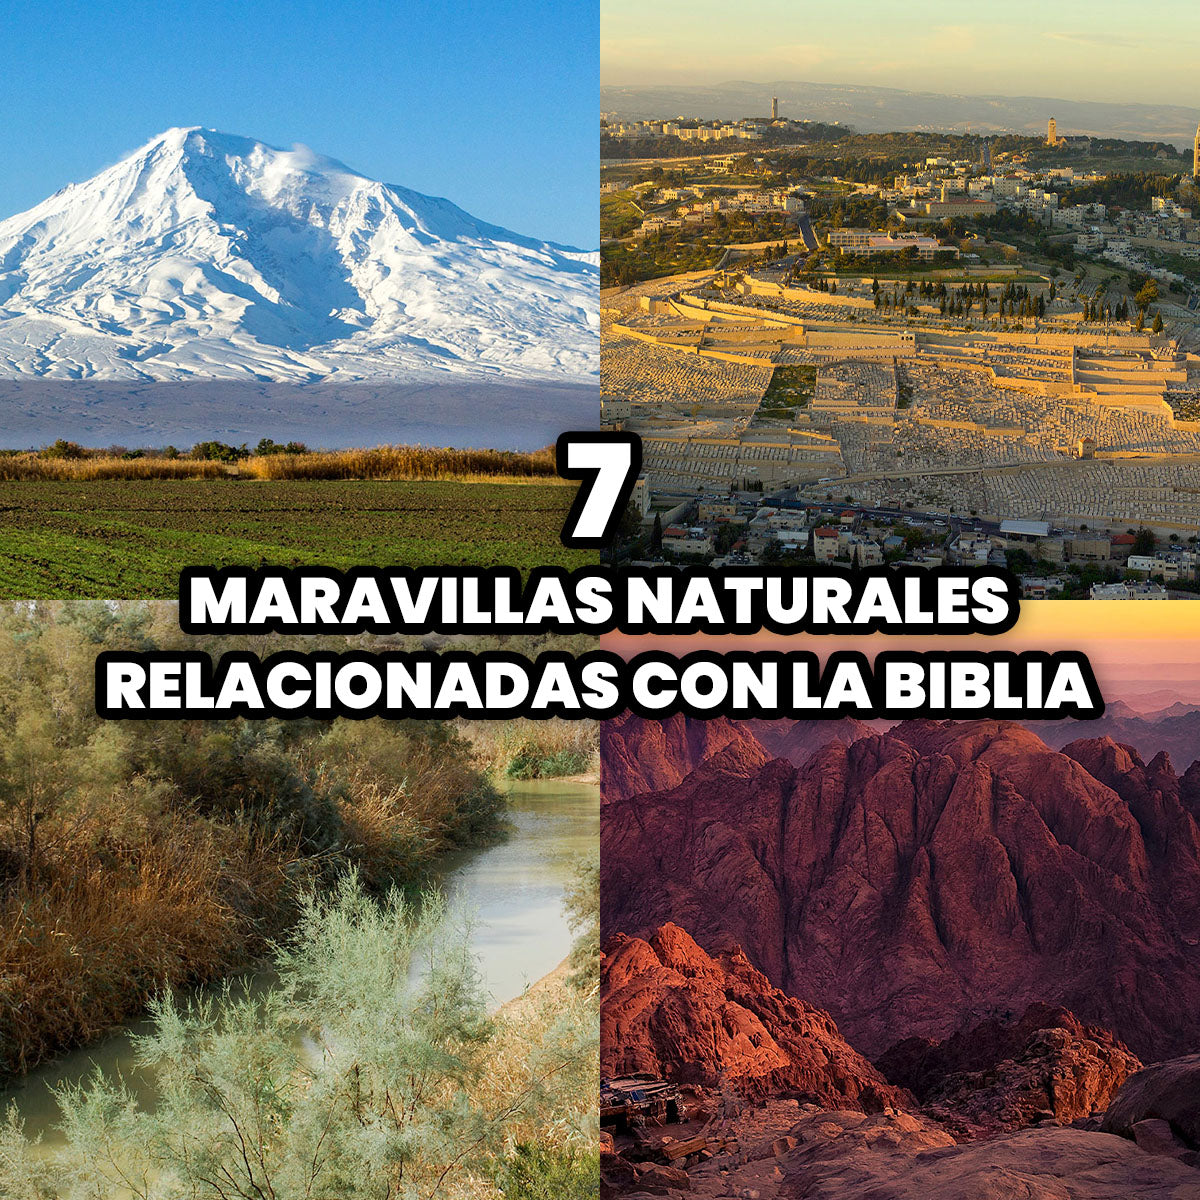 Las 7 Maravillas Naturales Relacionadas con la Biblia